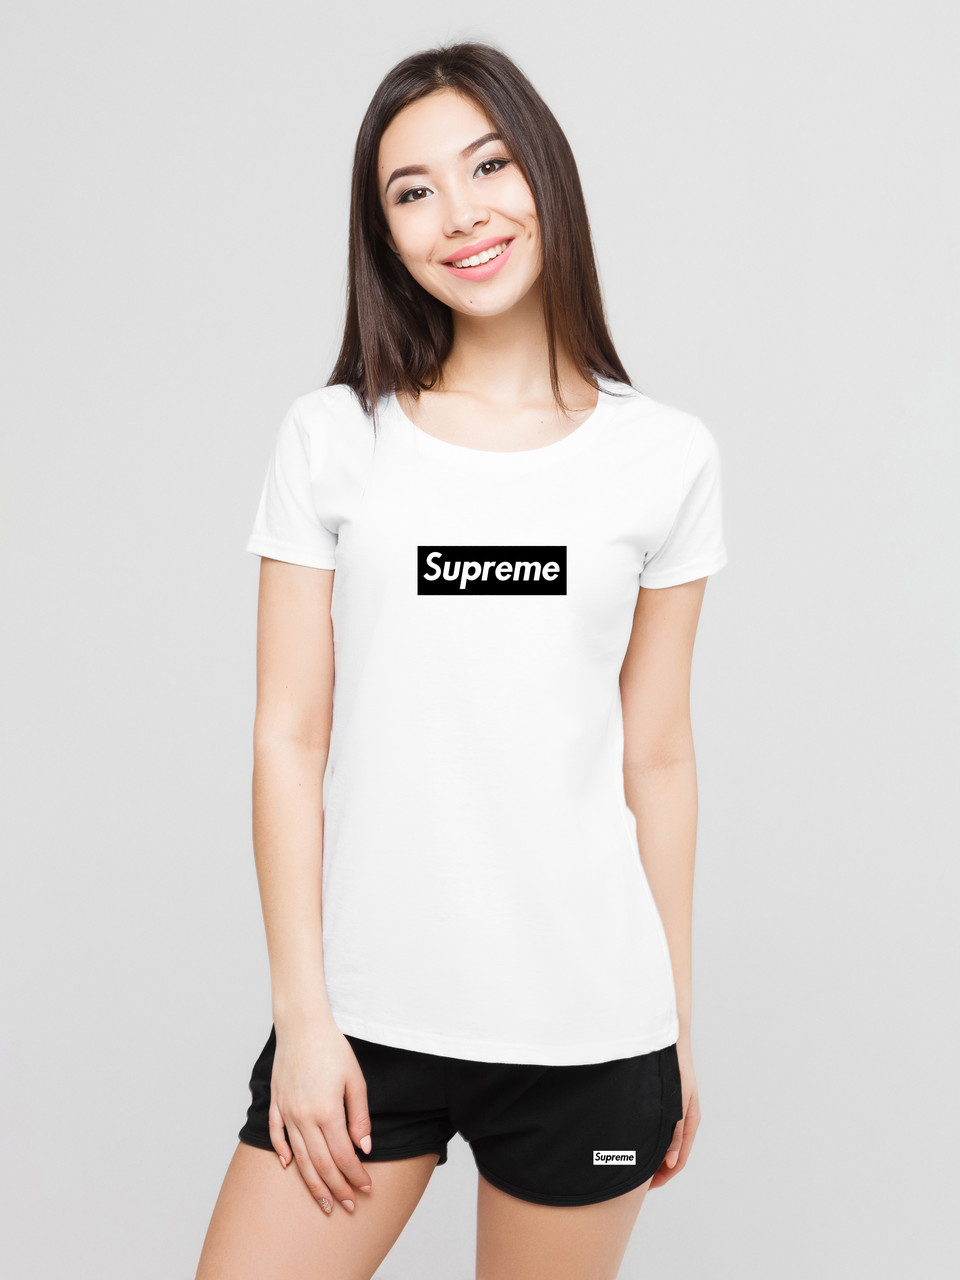 Жіночий комплект Supreme футболка + шорти, суприм